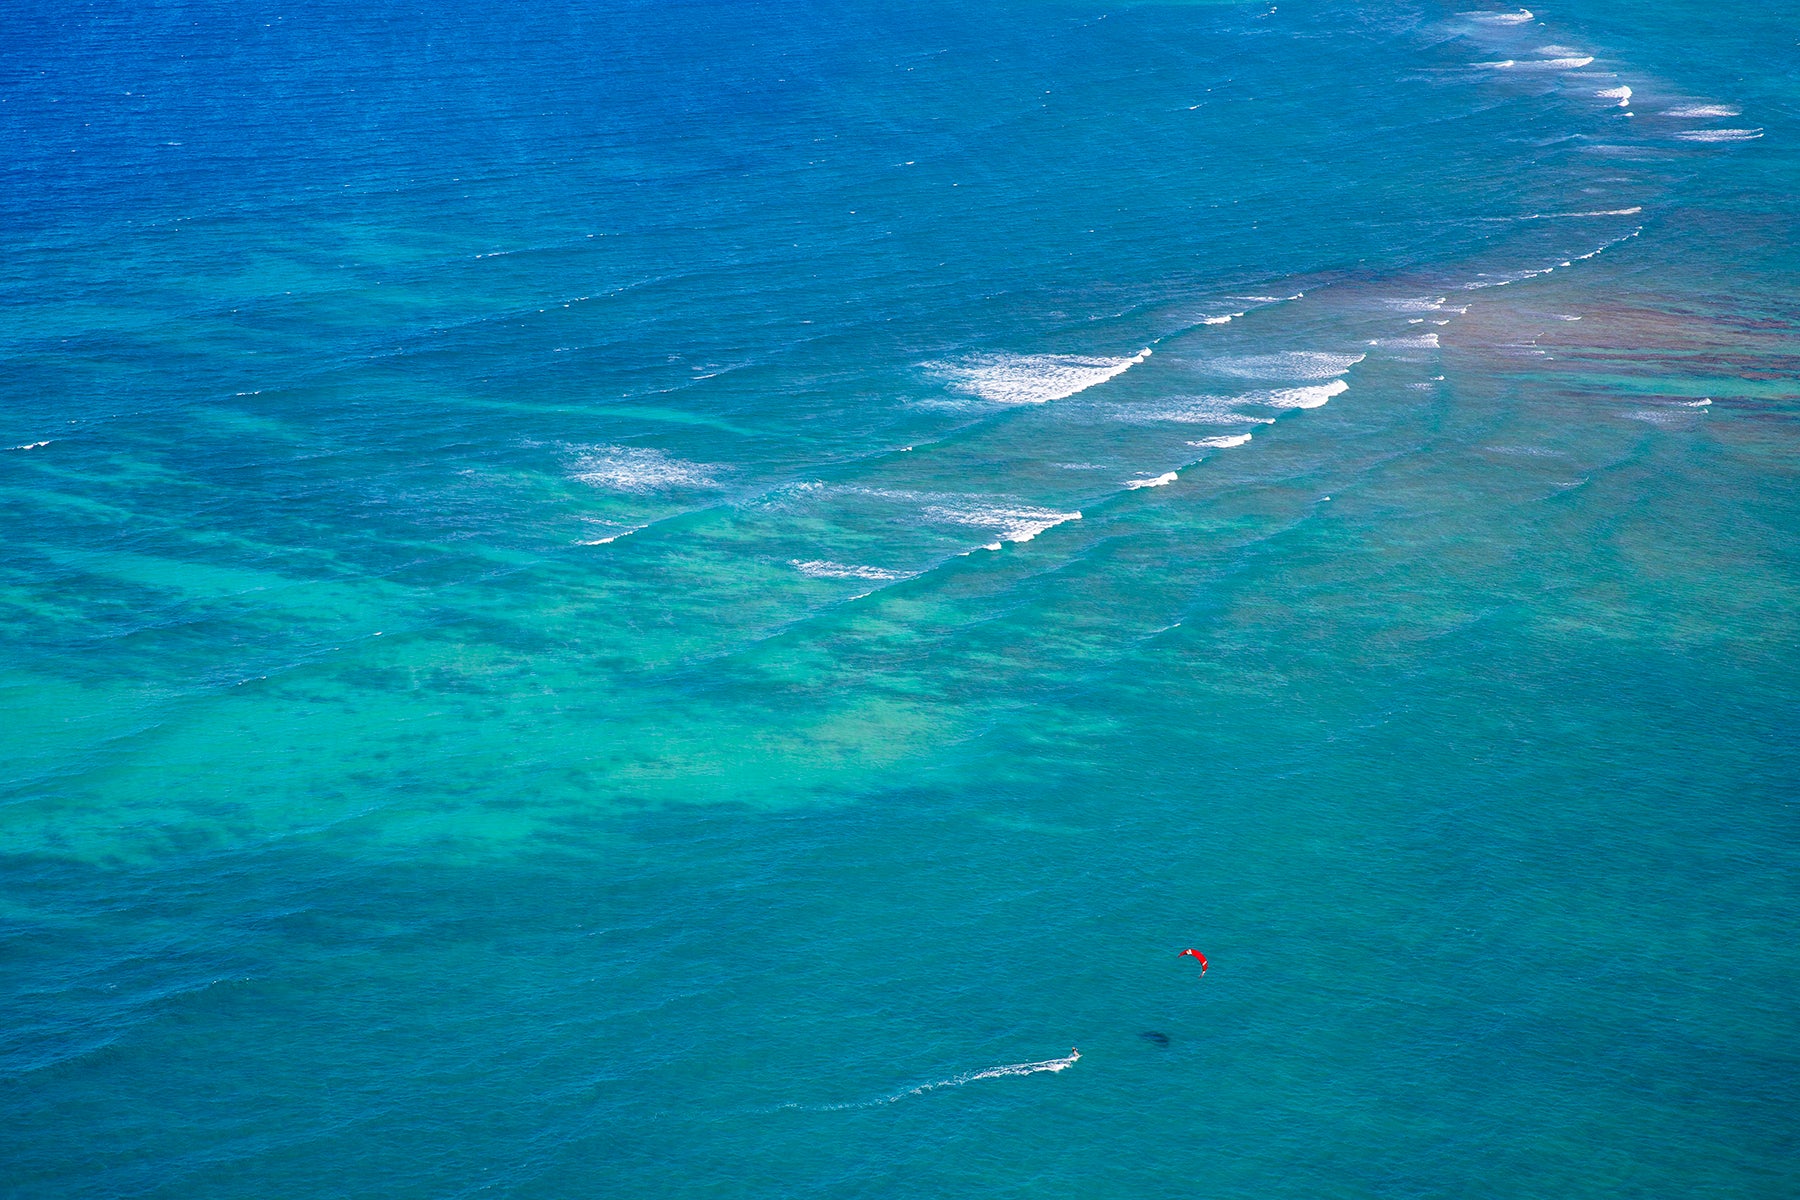 red-kite-on-blue-ocean.jpg